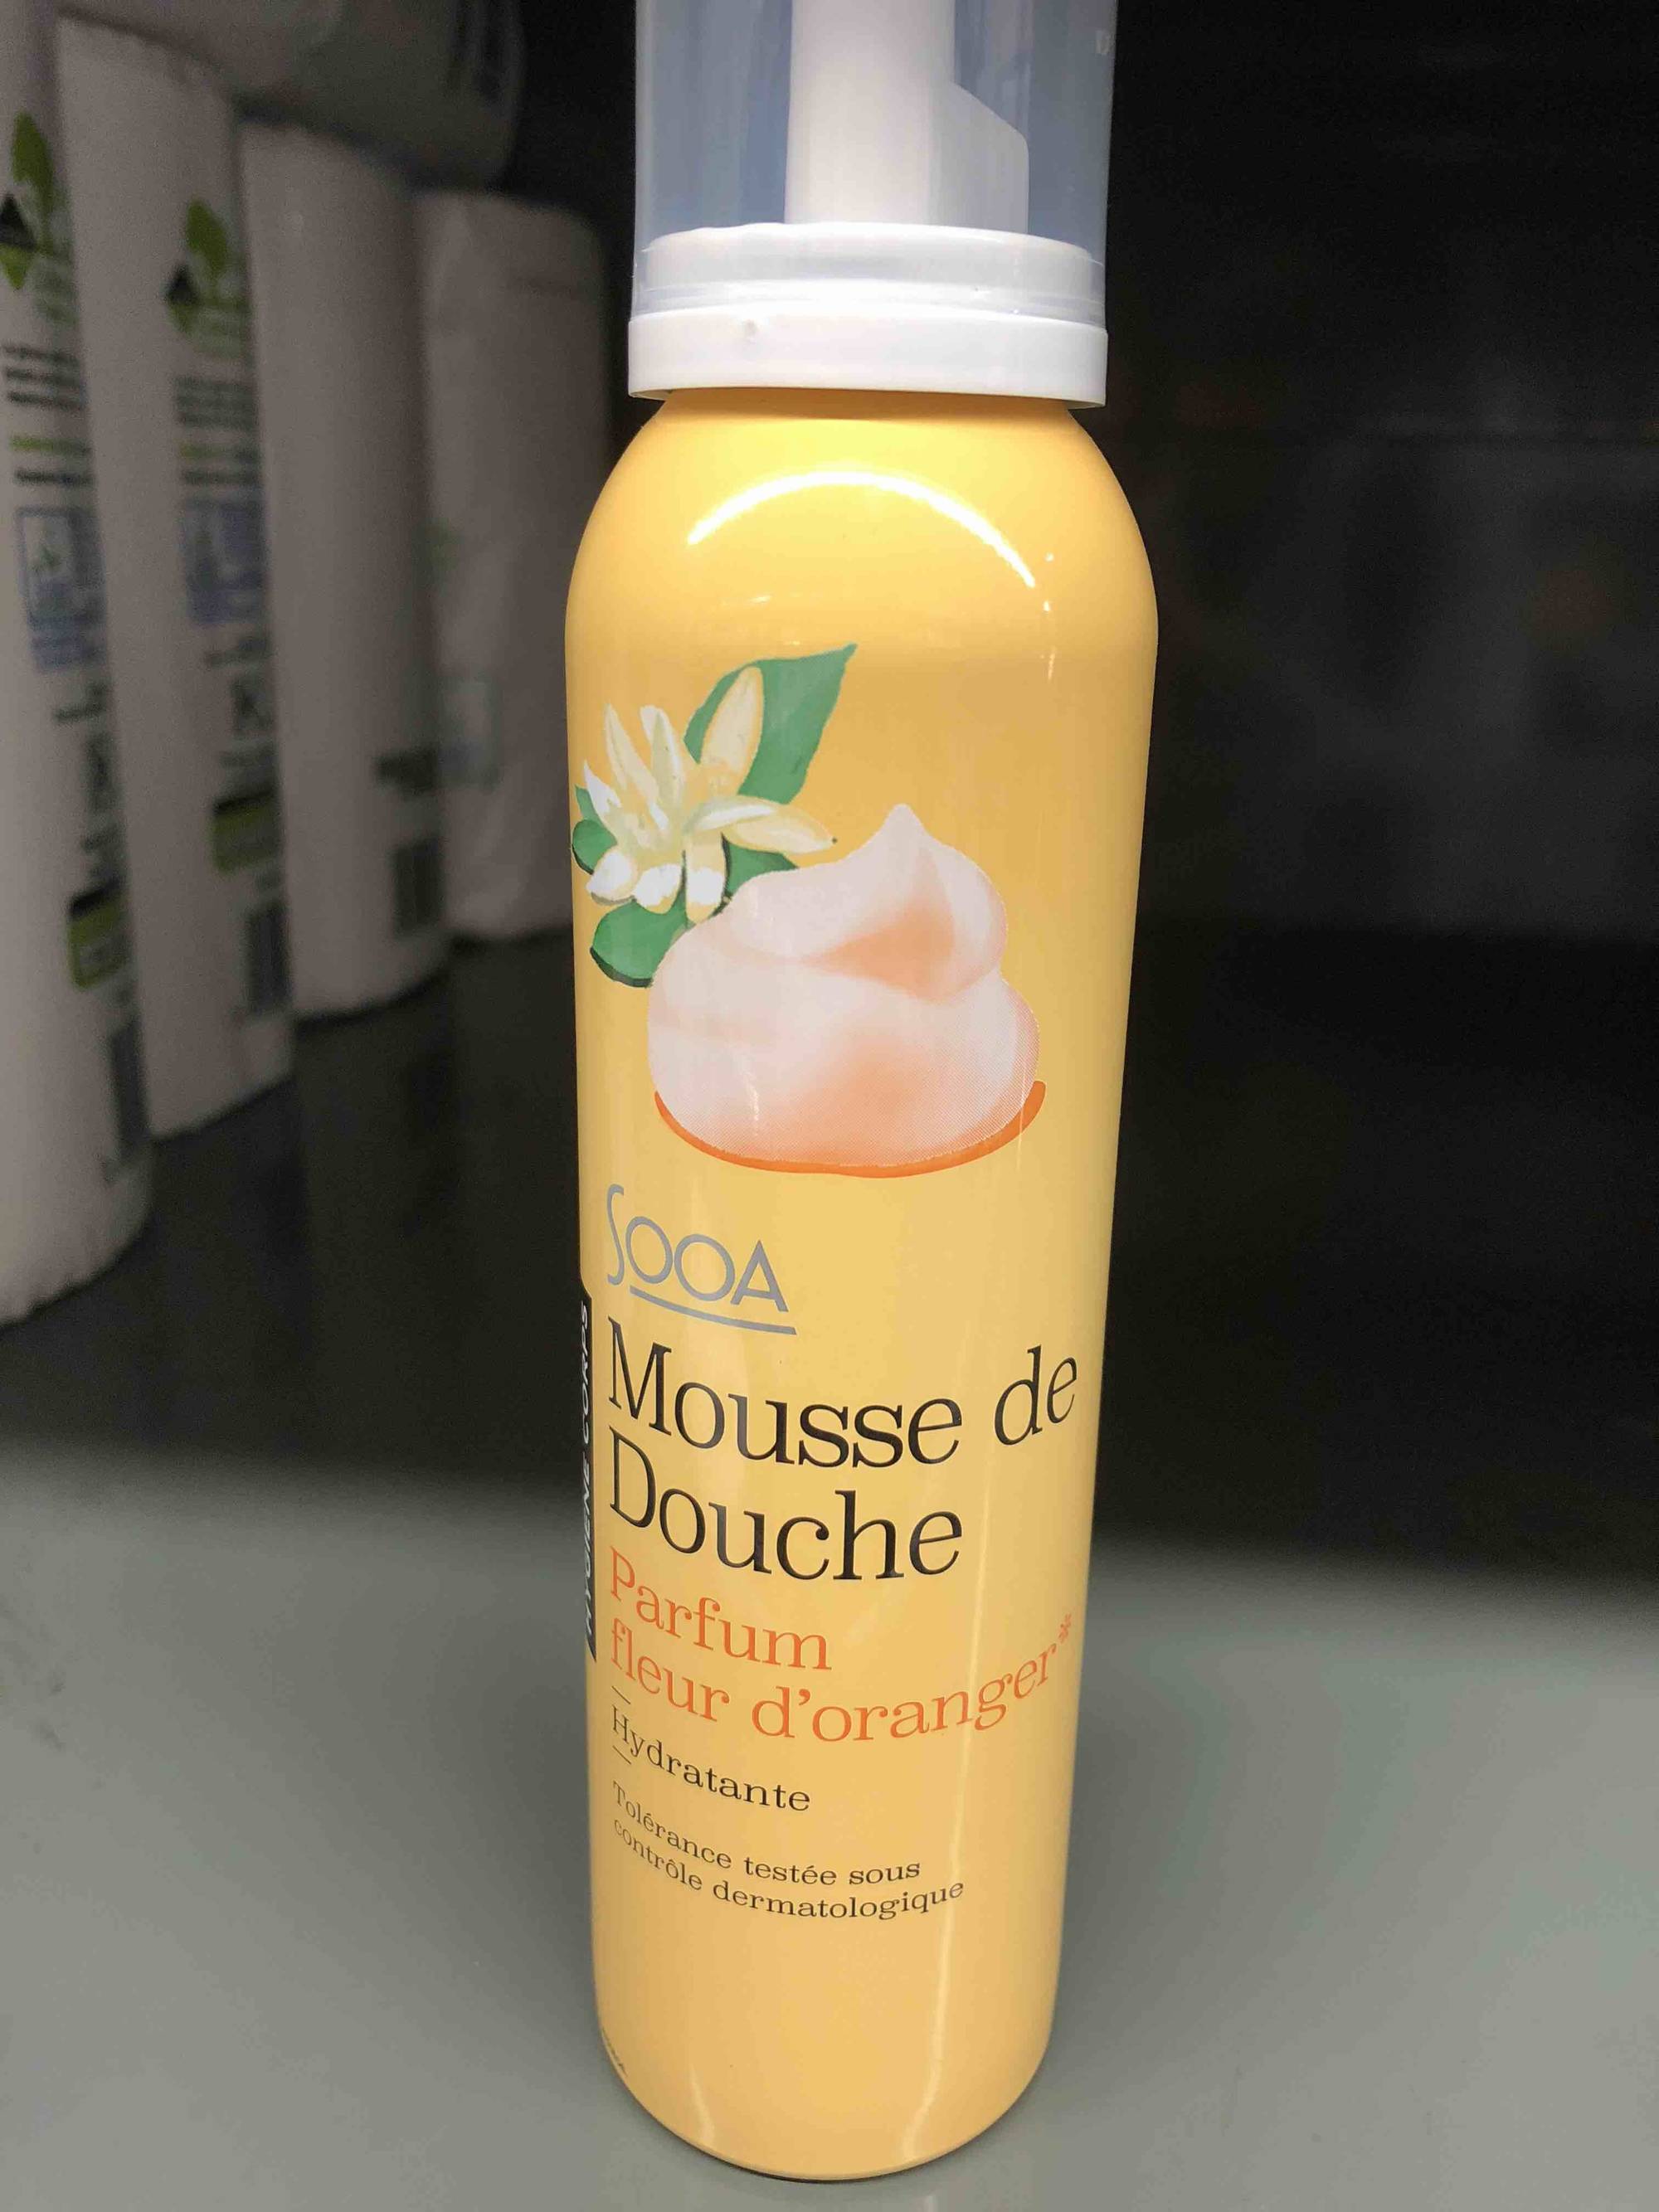 SOOA - Mousse de douche hydratante parfum fleur d'oranger